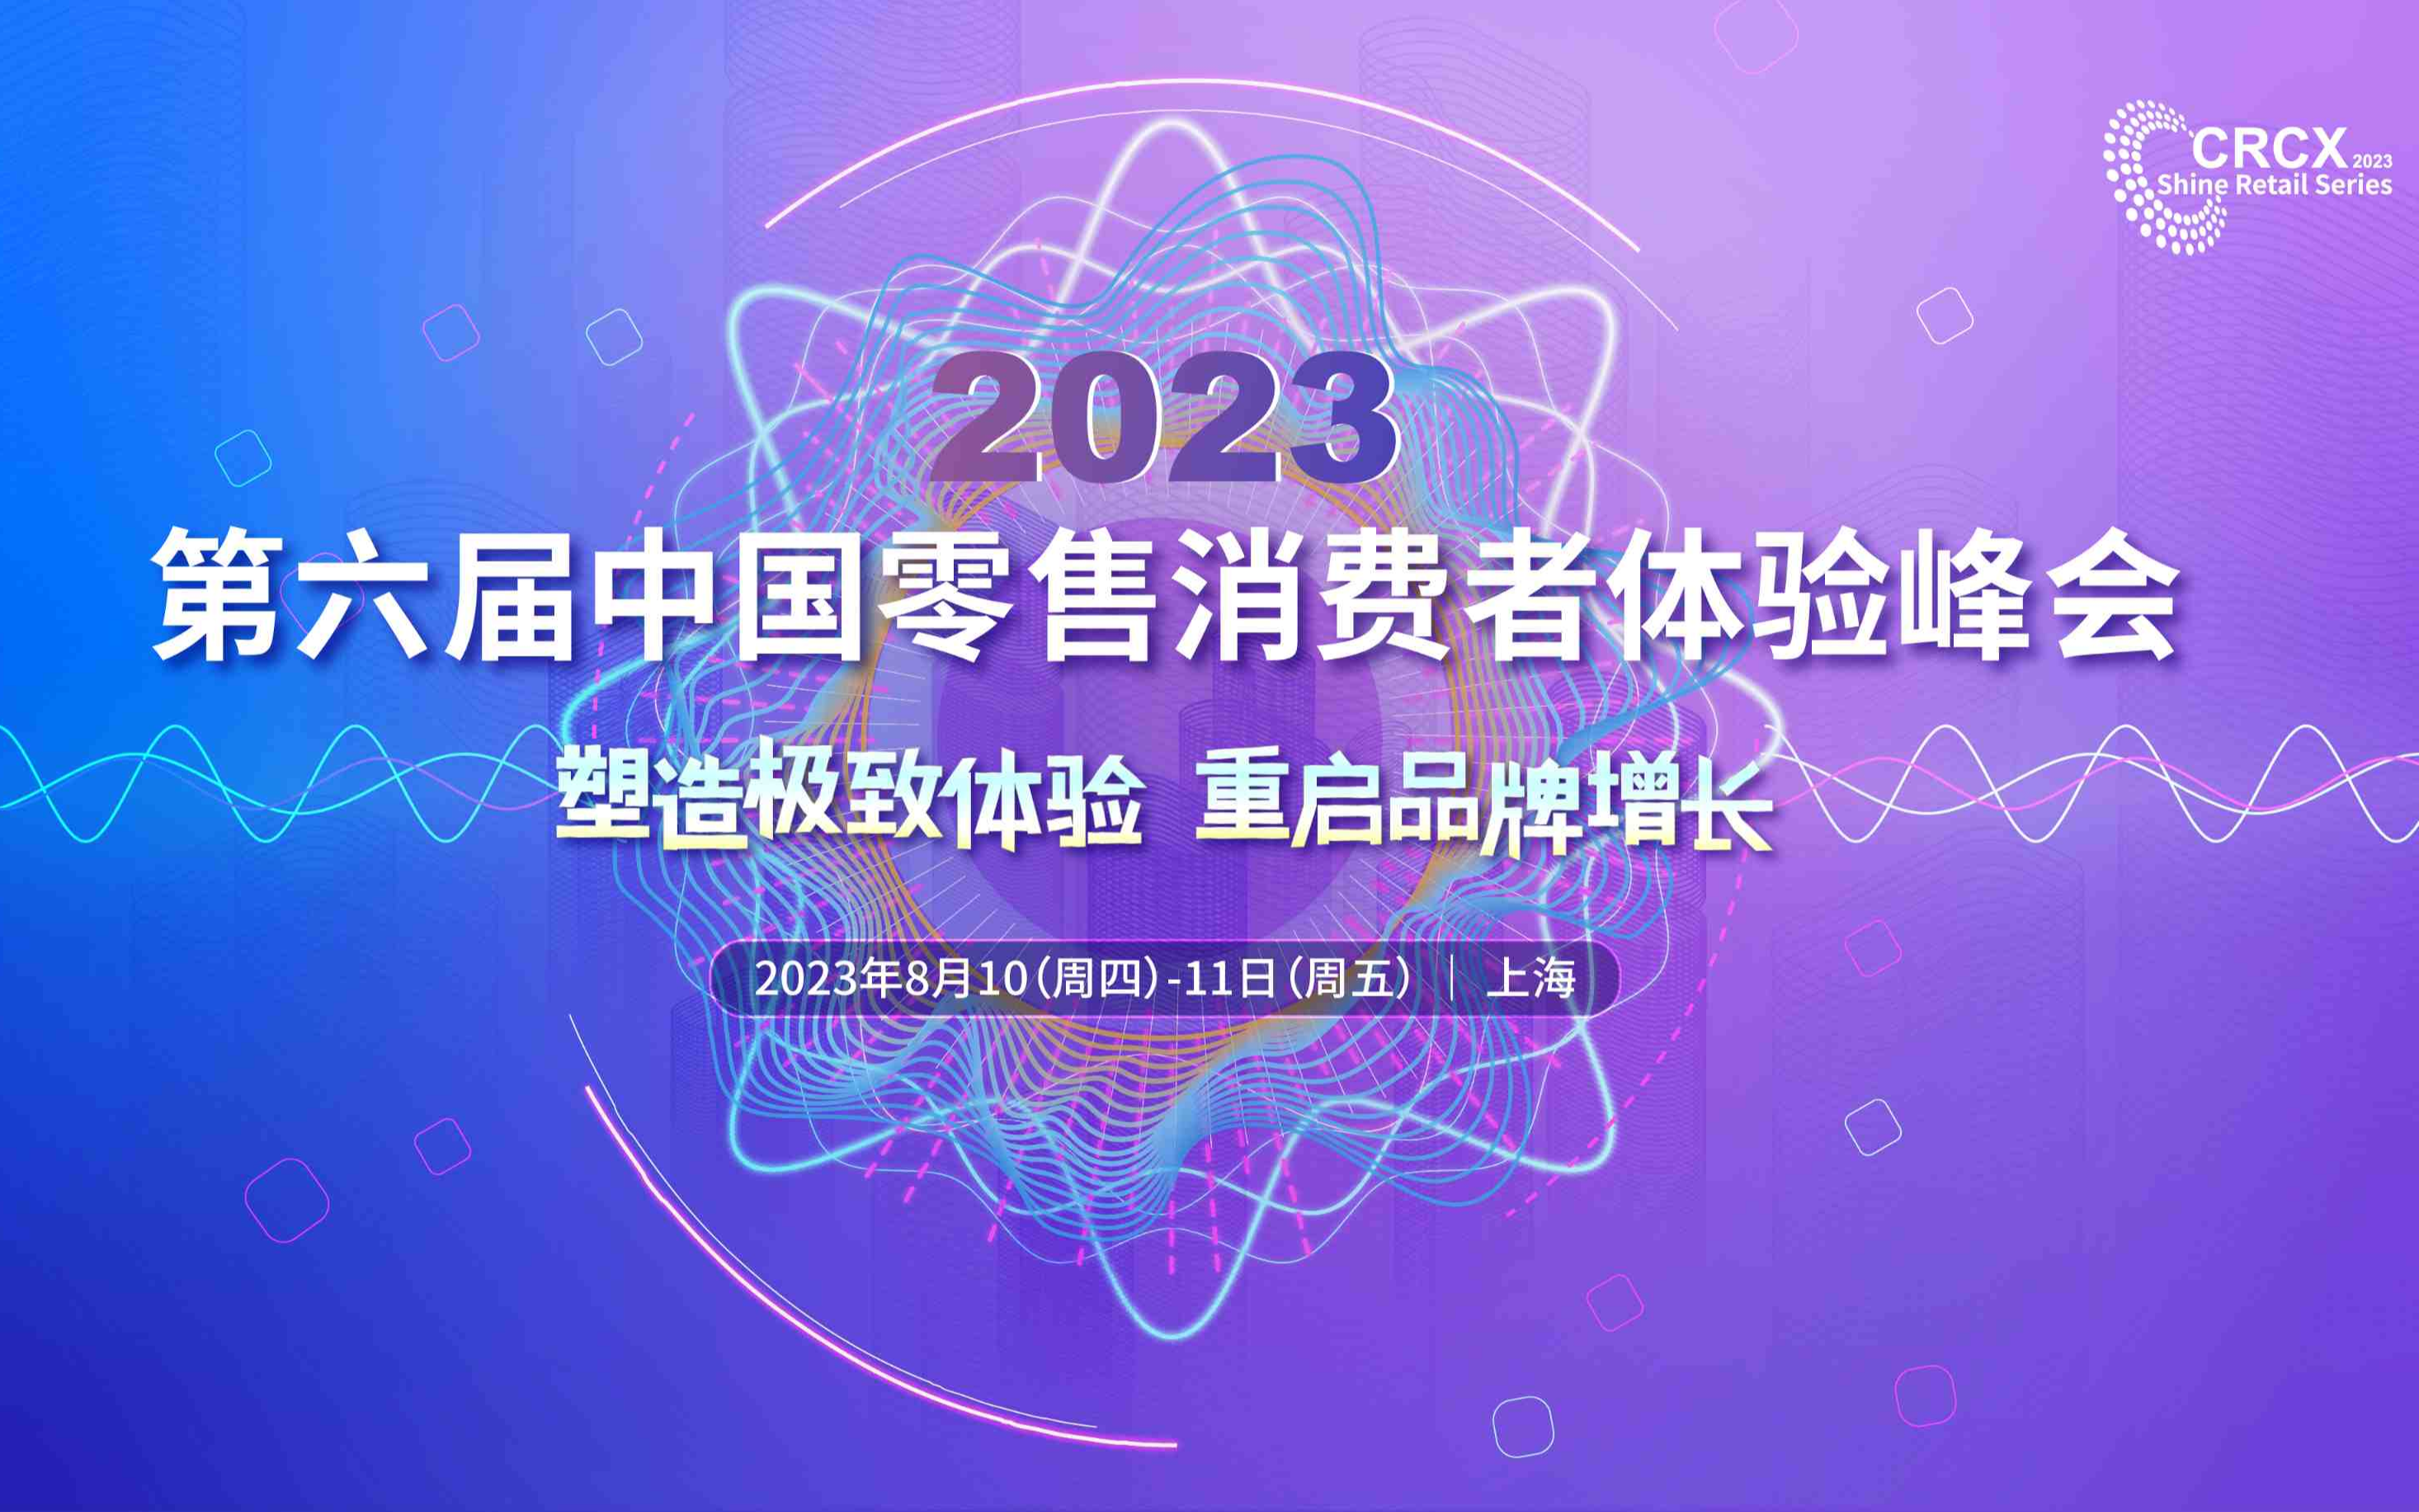 2023第六届中国零售消费者体验峰会